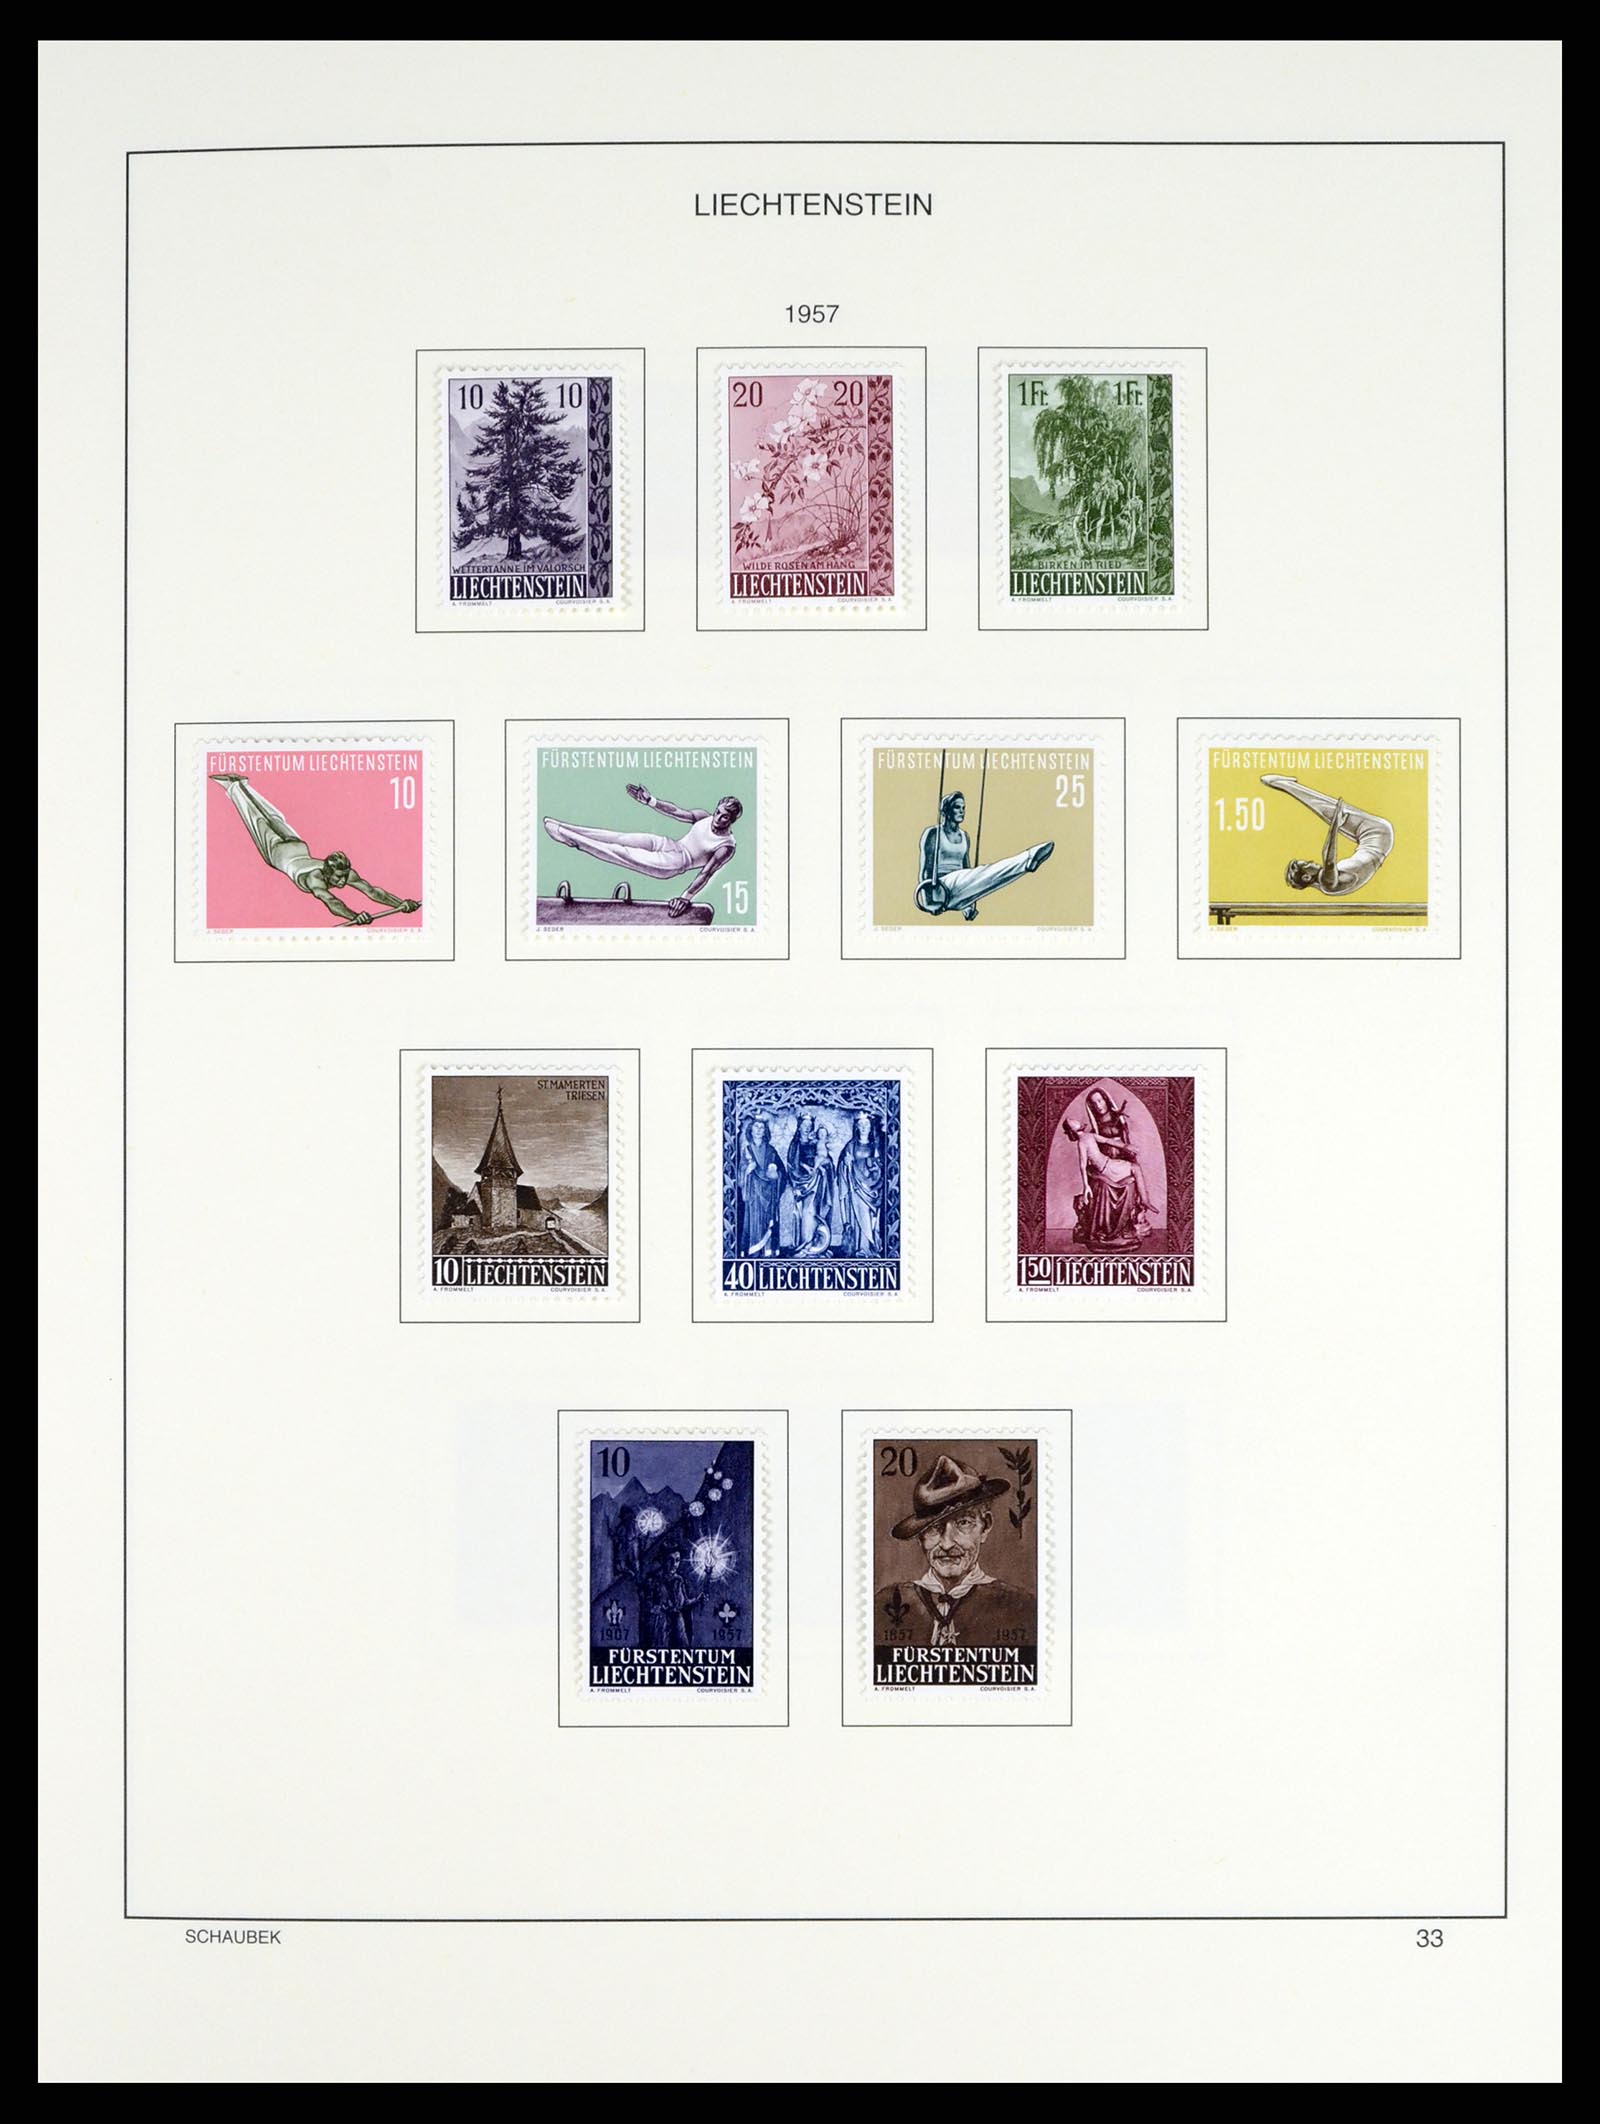 37547 038 - Stamp collection 37547 Liechtenstein 1912-2011.